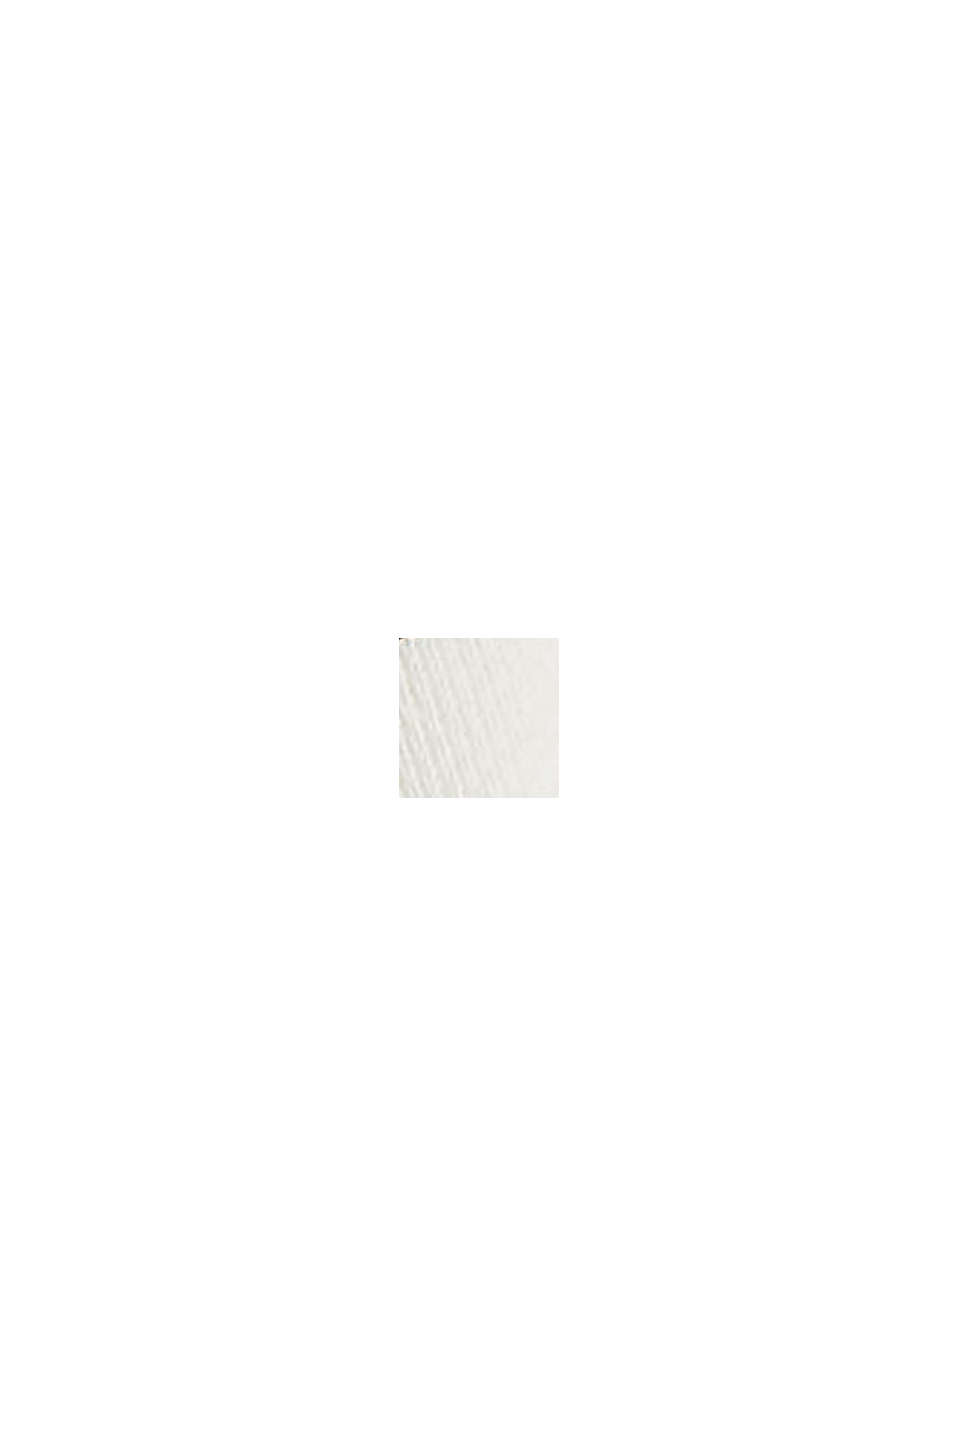 Jersey con diseño de rayas aterciopeladas y detalle de botones, OFF WHITE, swatch